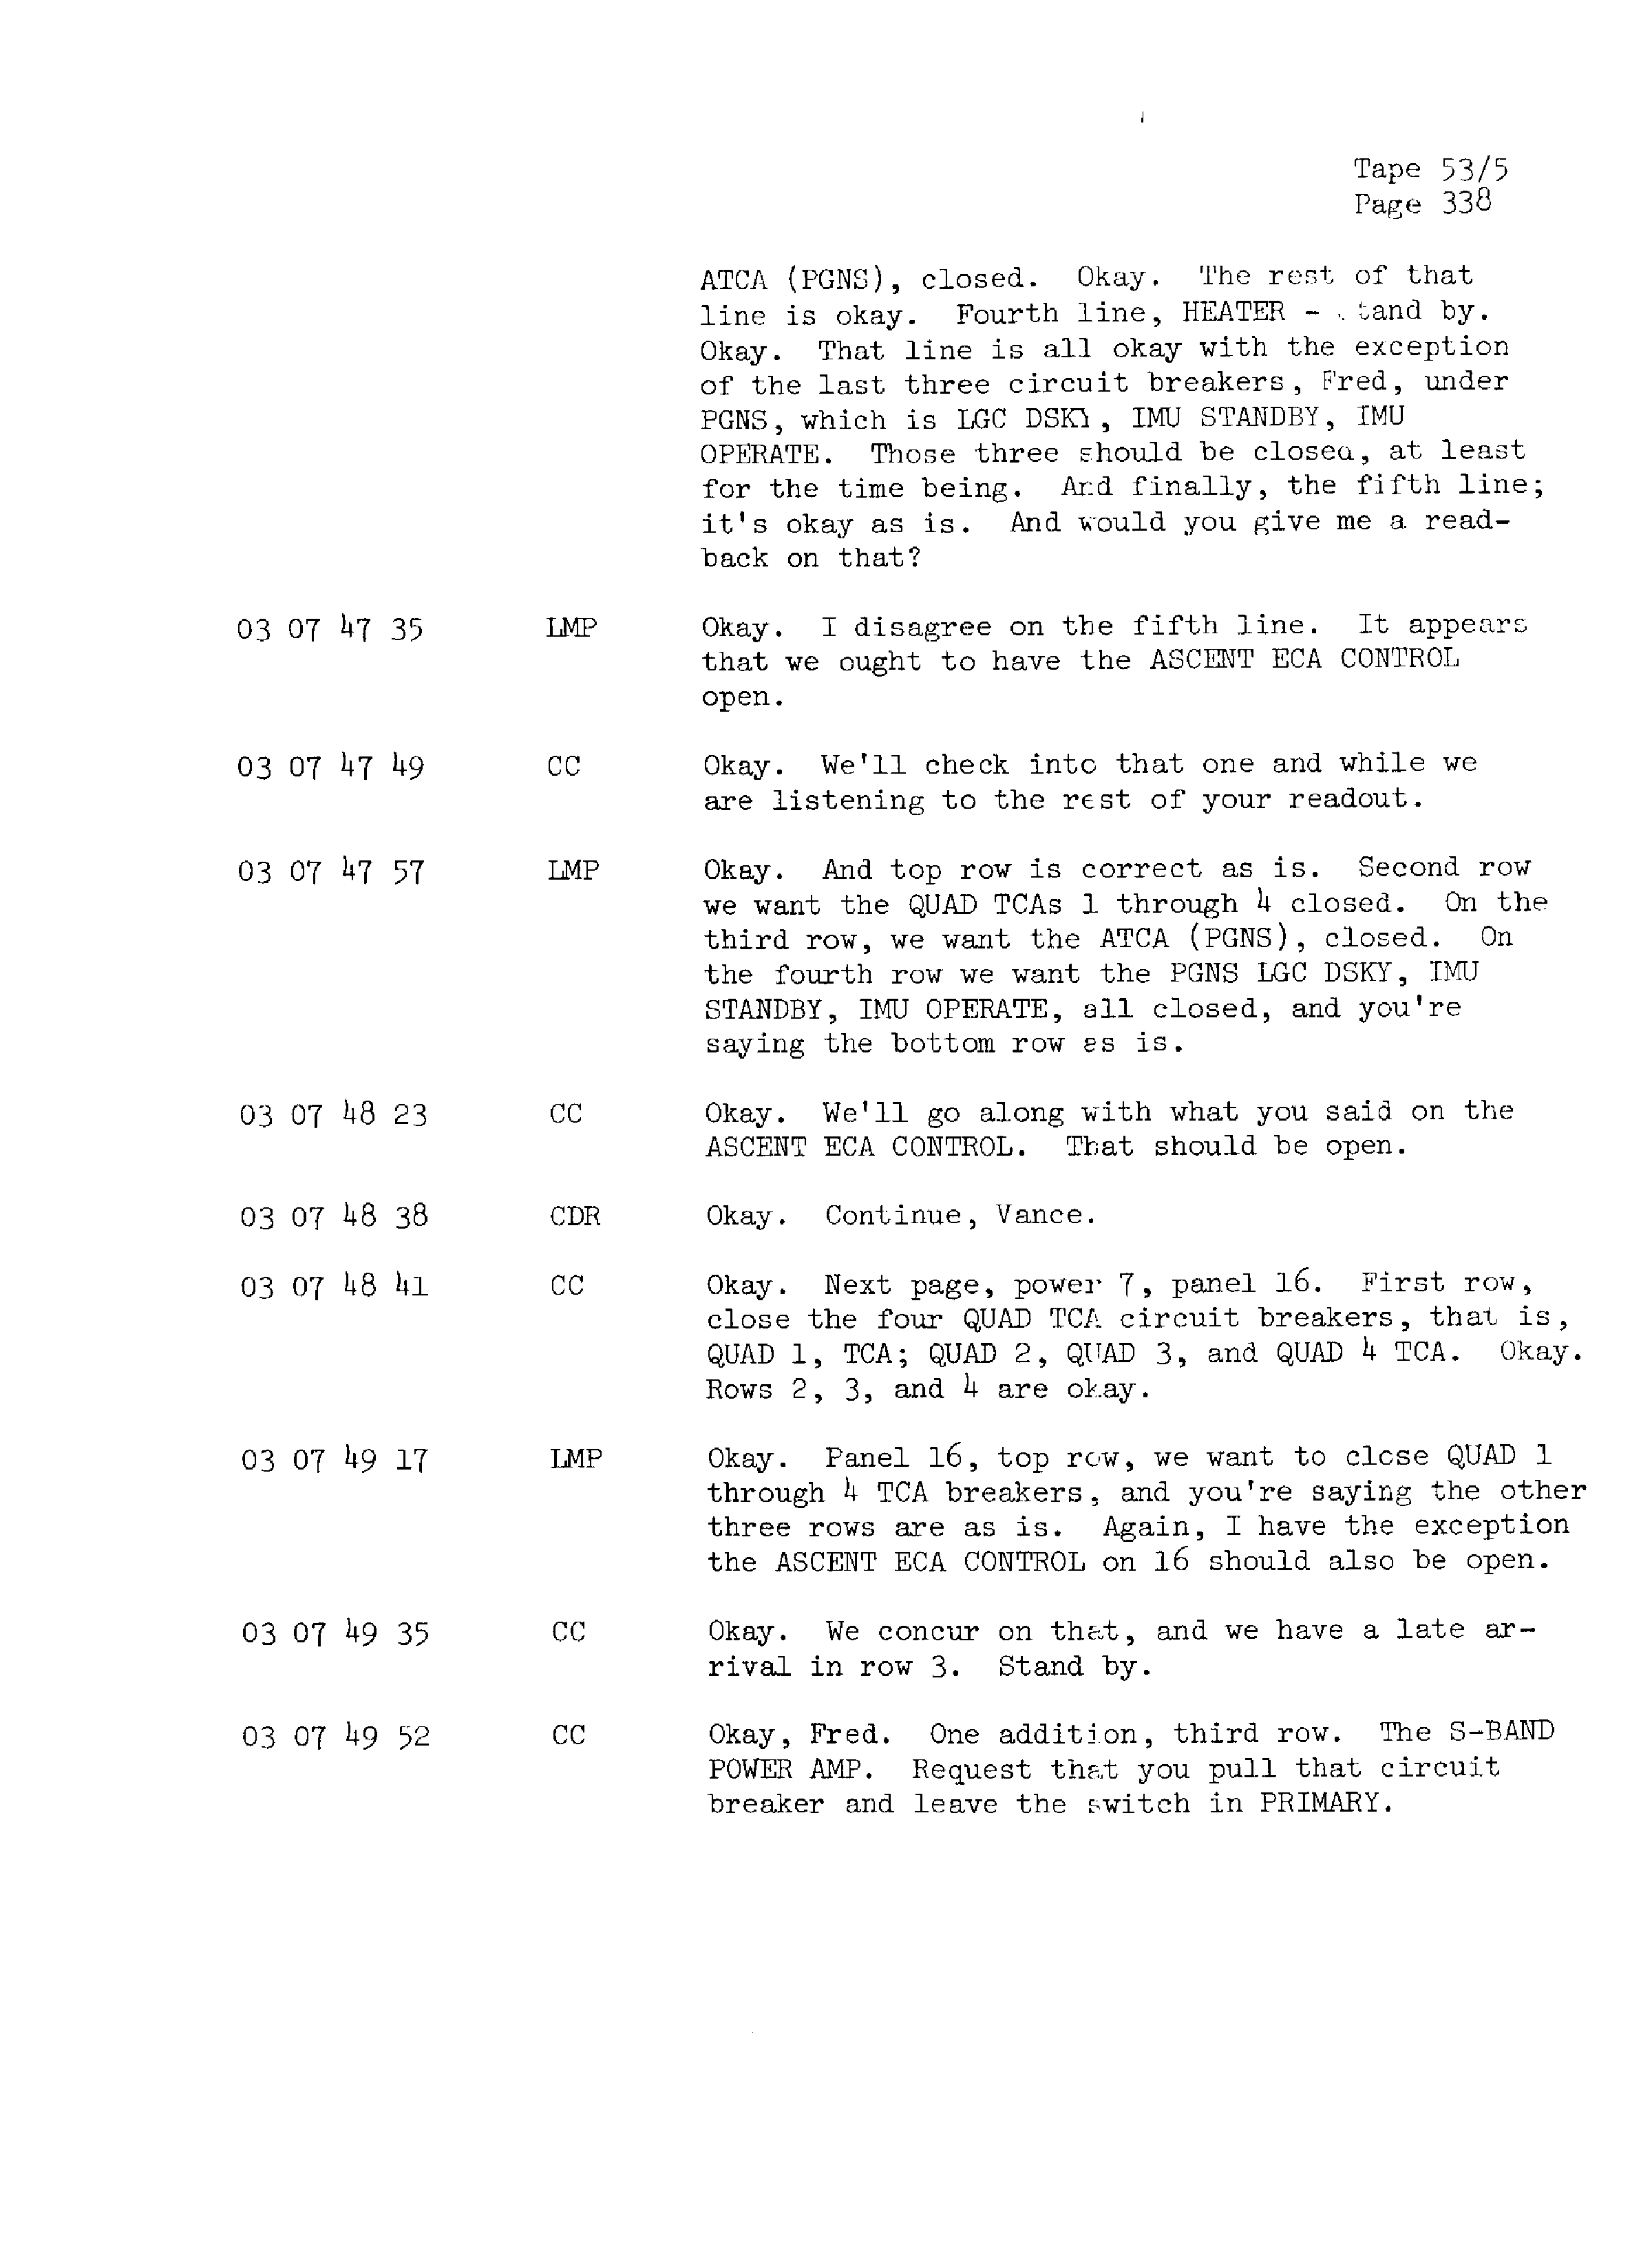 Page 345 of Apollo 13’s original transcript